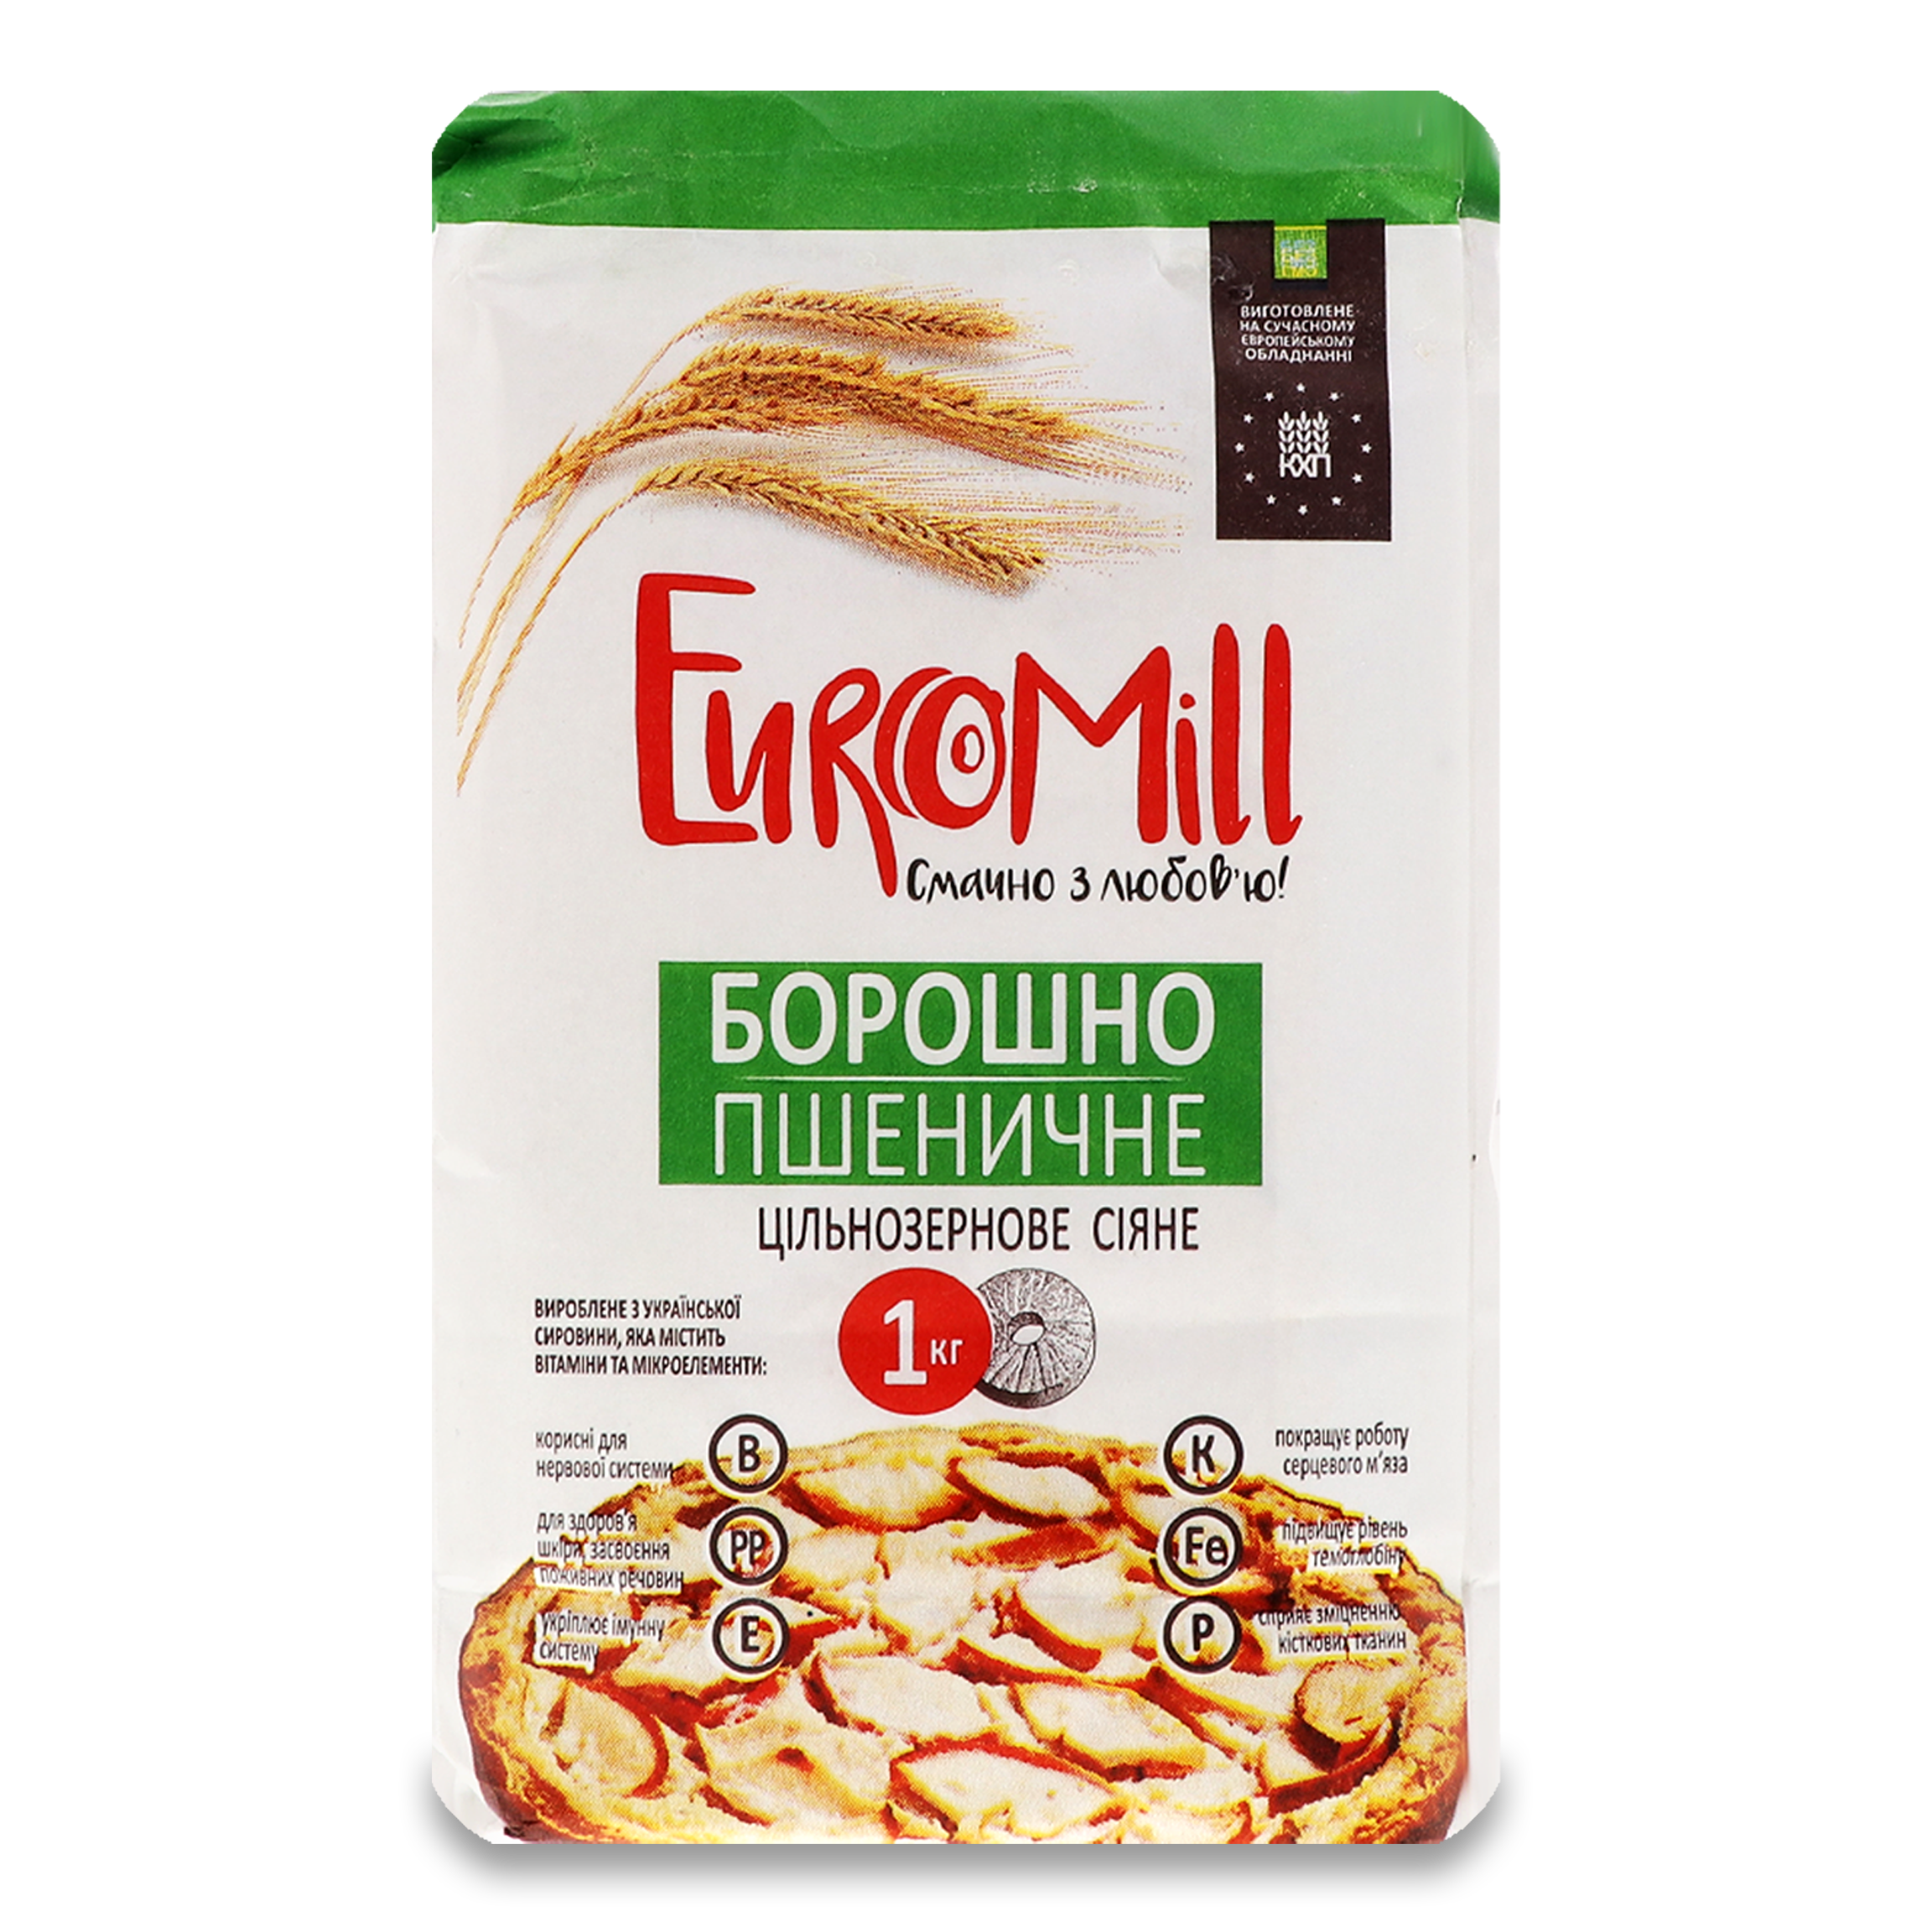 EuroMill Whole Grain Wheat fFour 1kg